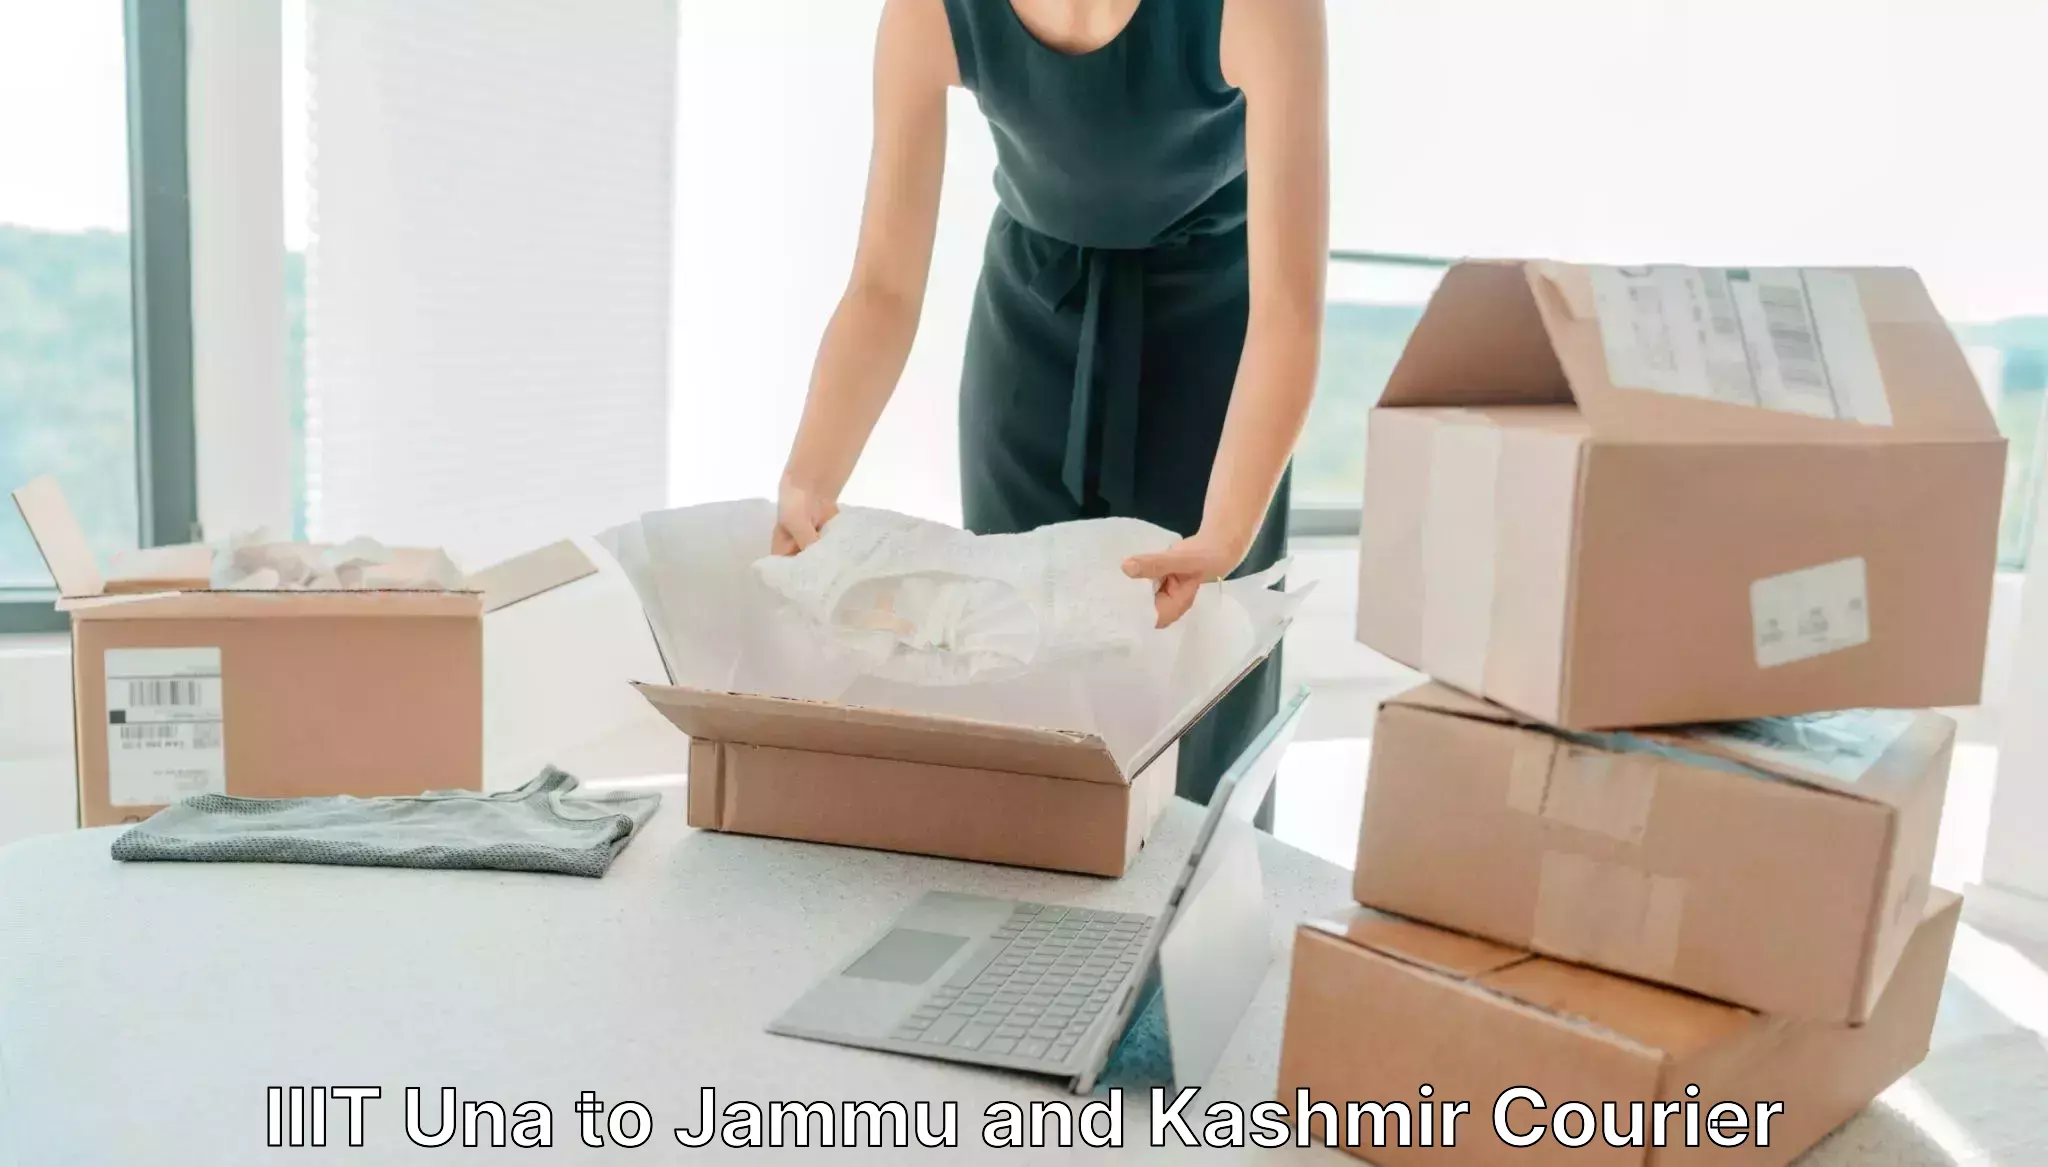 Courier tracking online IIIT Una to Srinagar Kashmir